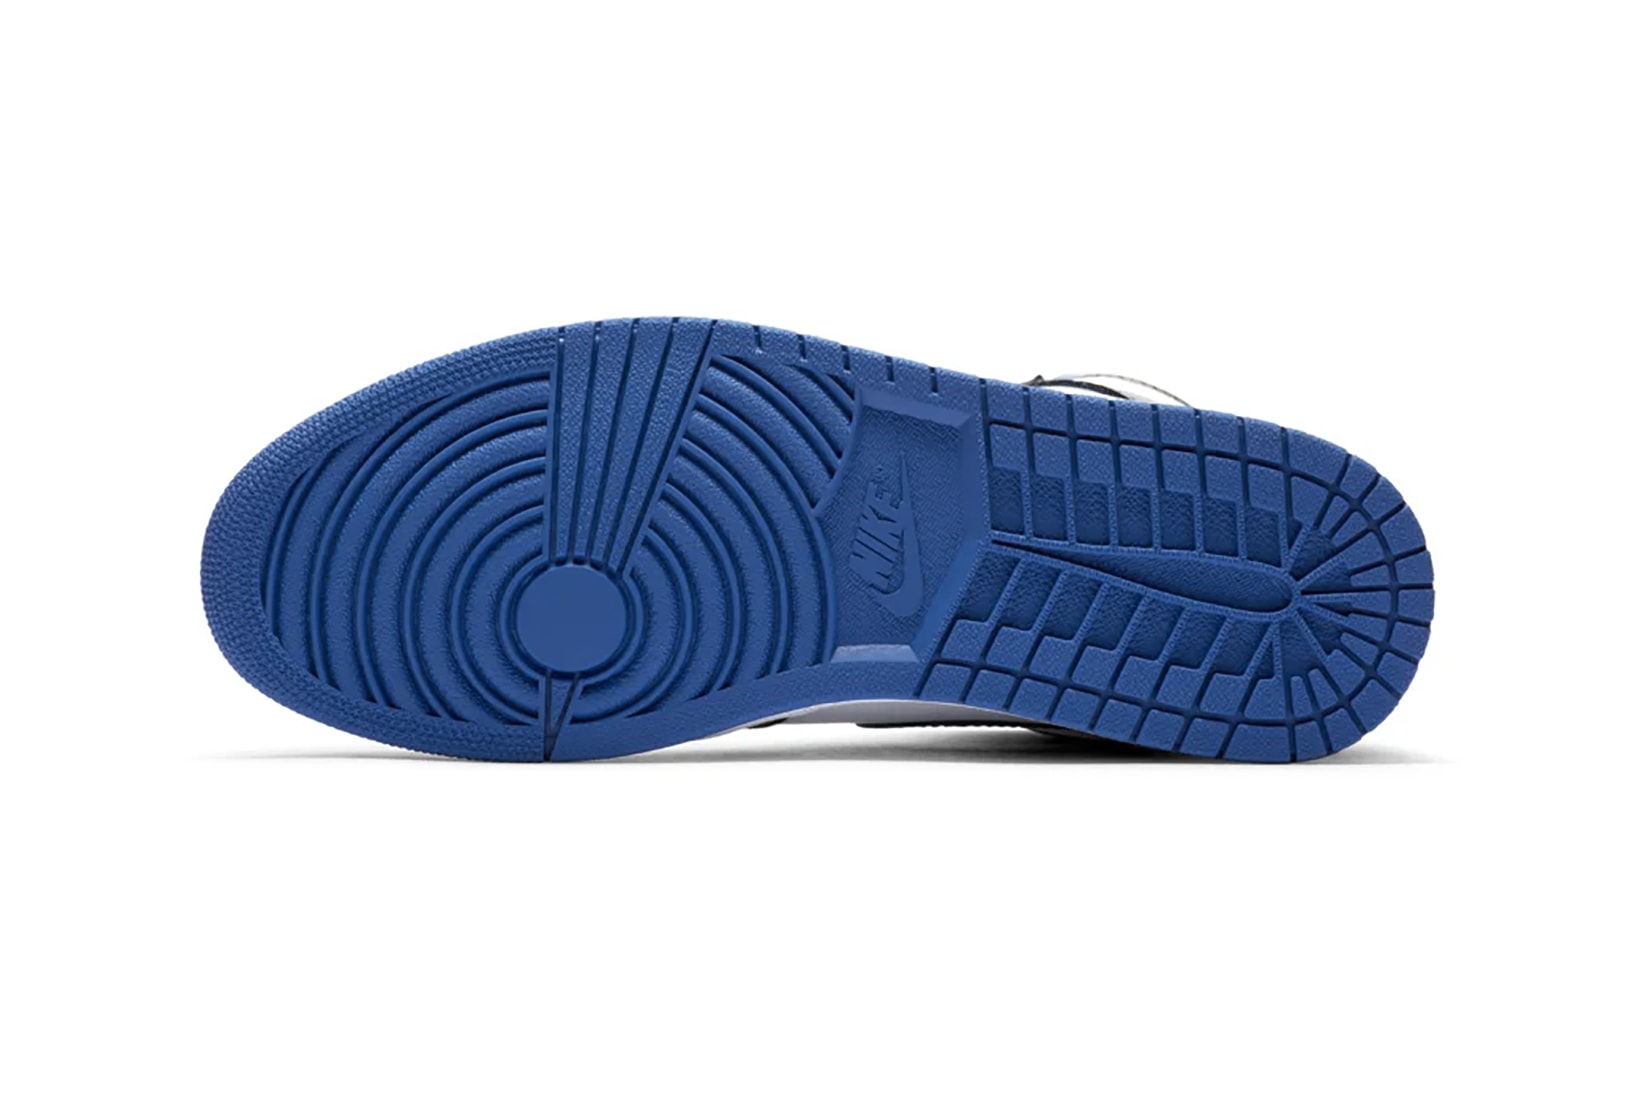 nike air jordan 1 retro high og sneakers black blue white colorway shoes sneakerhead footwear